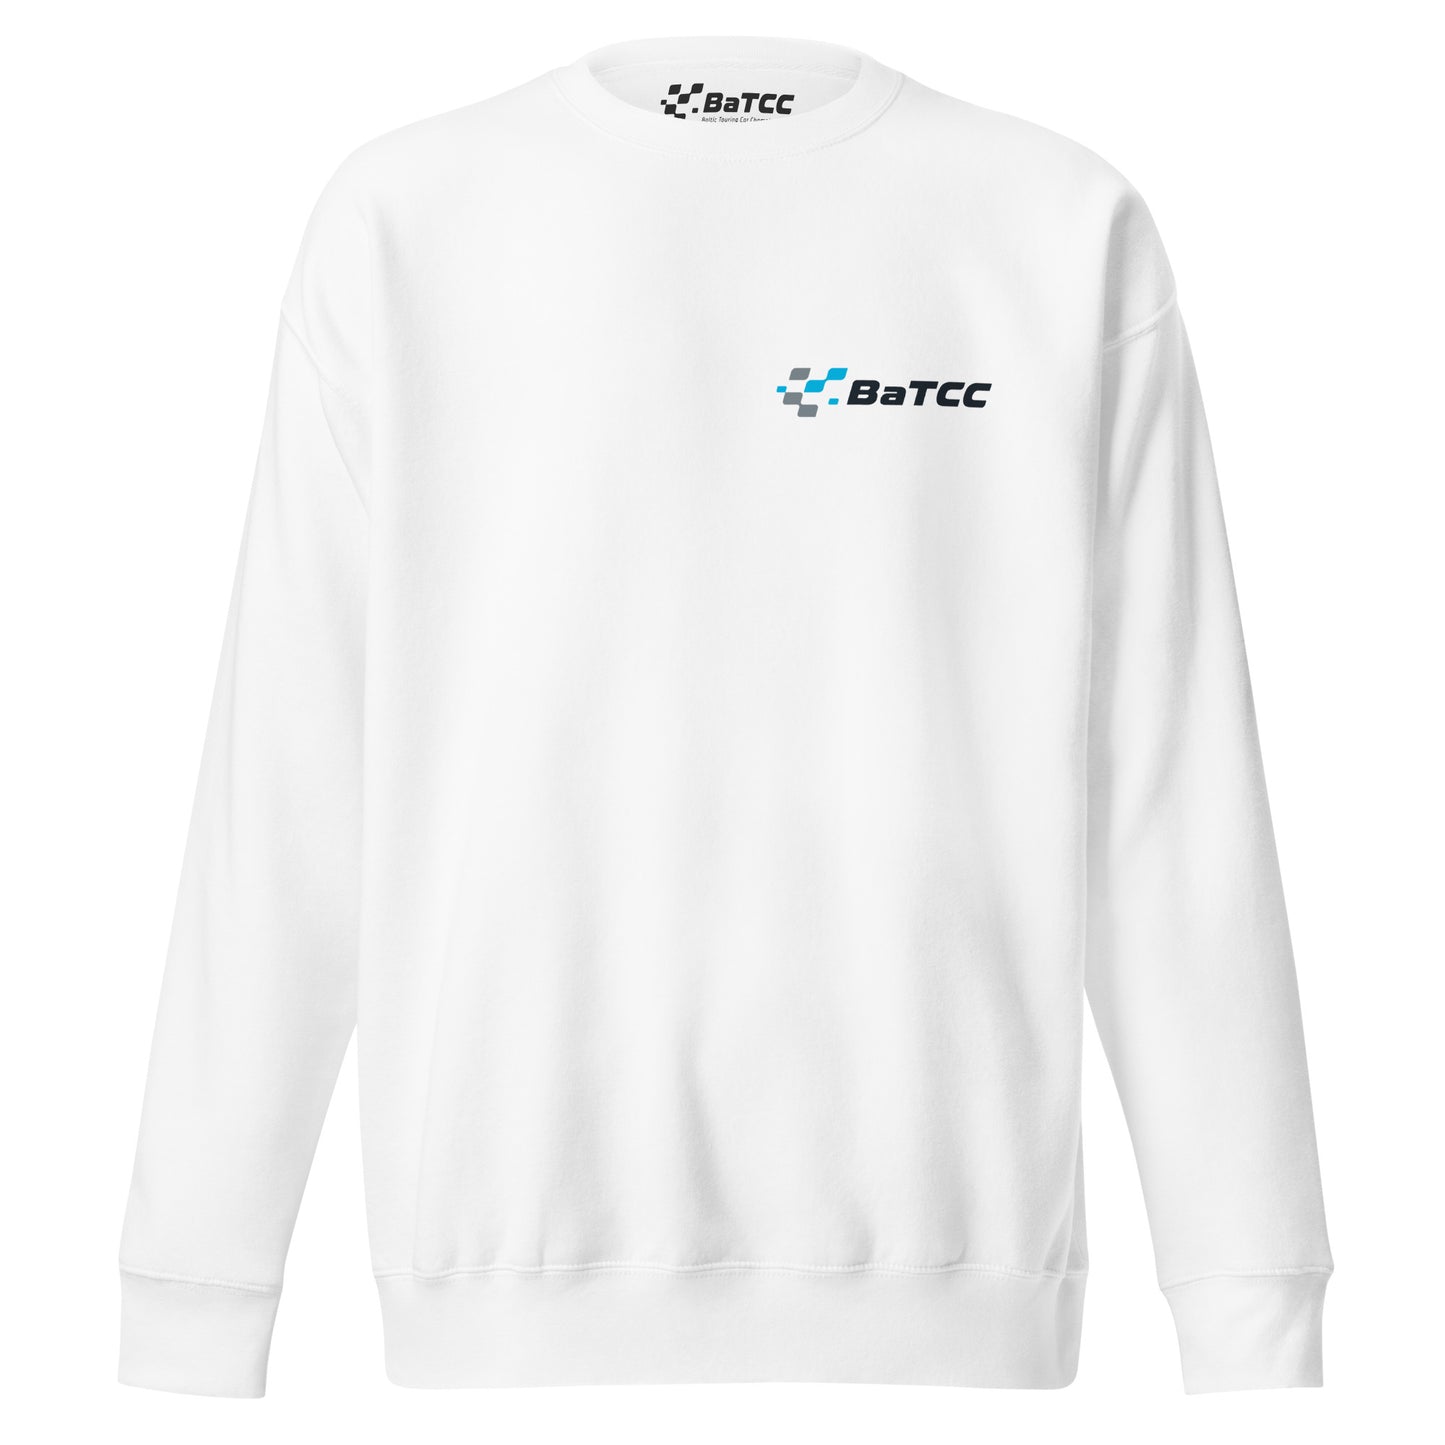 BaTCC Unisex Premium Sweatshirt